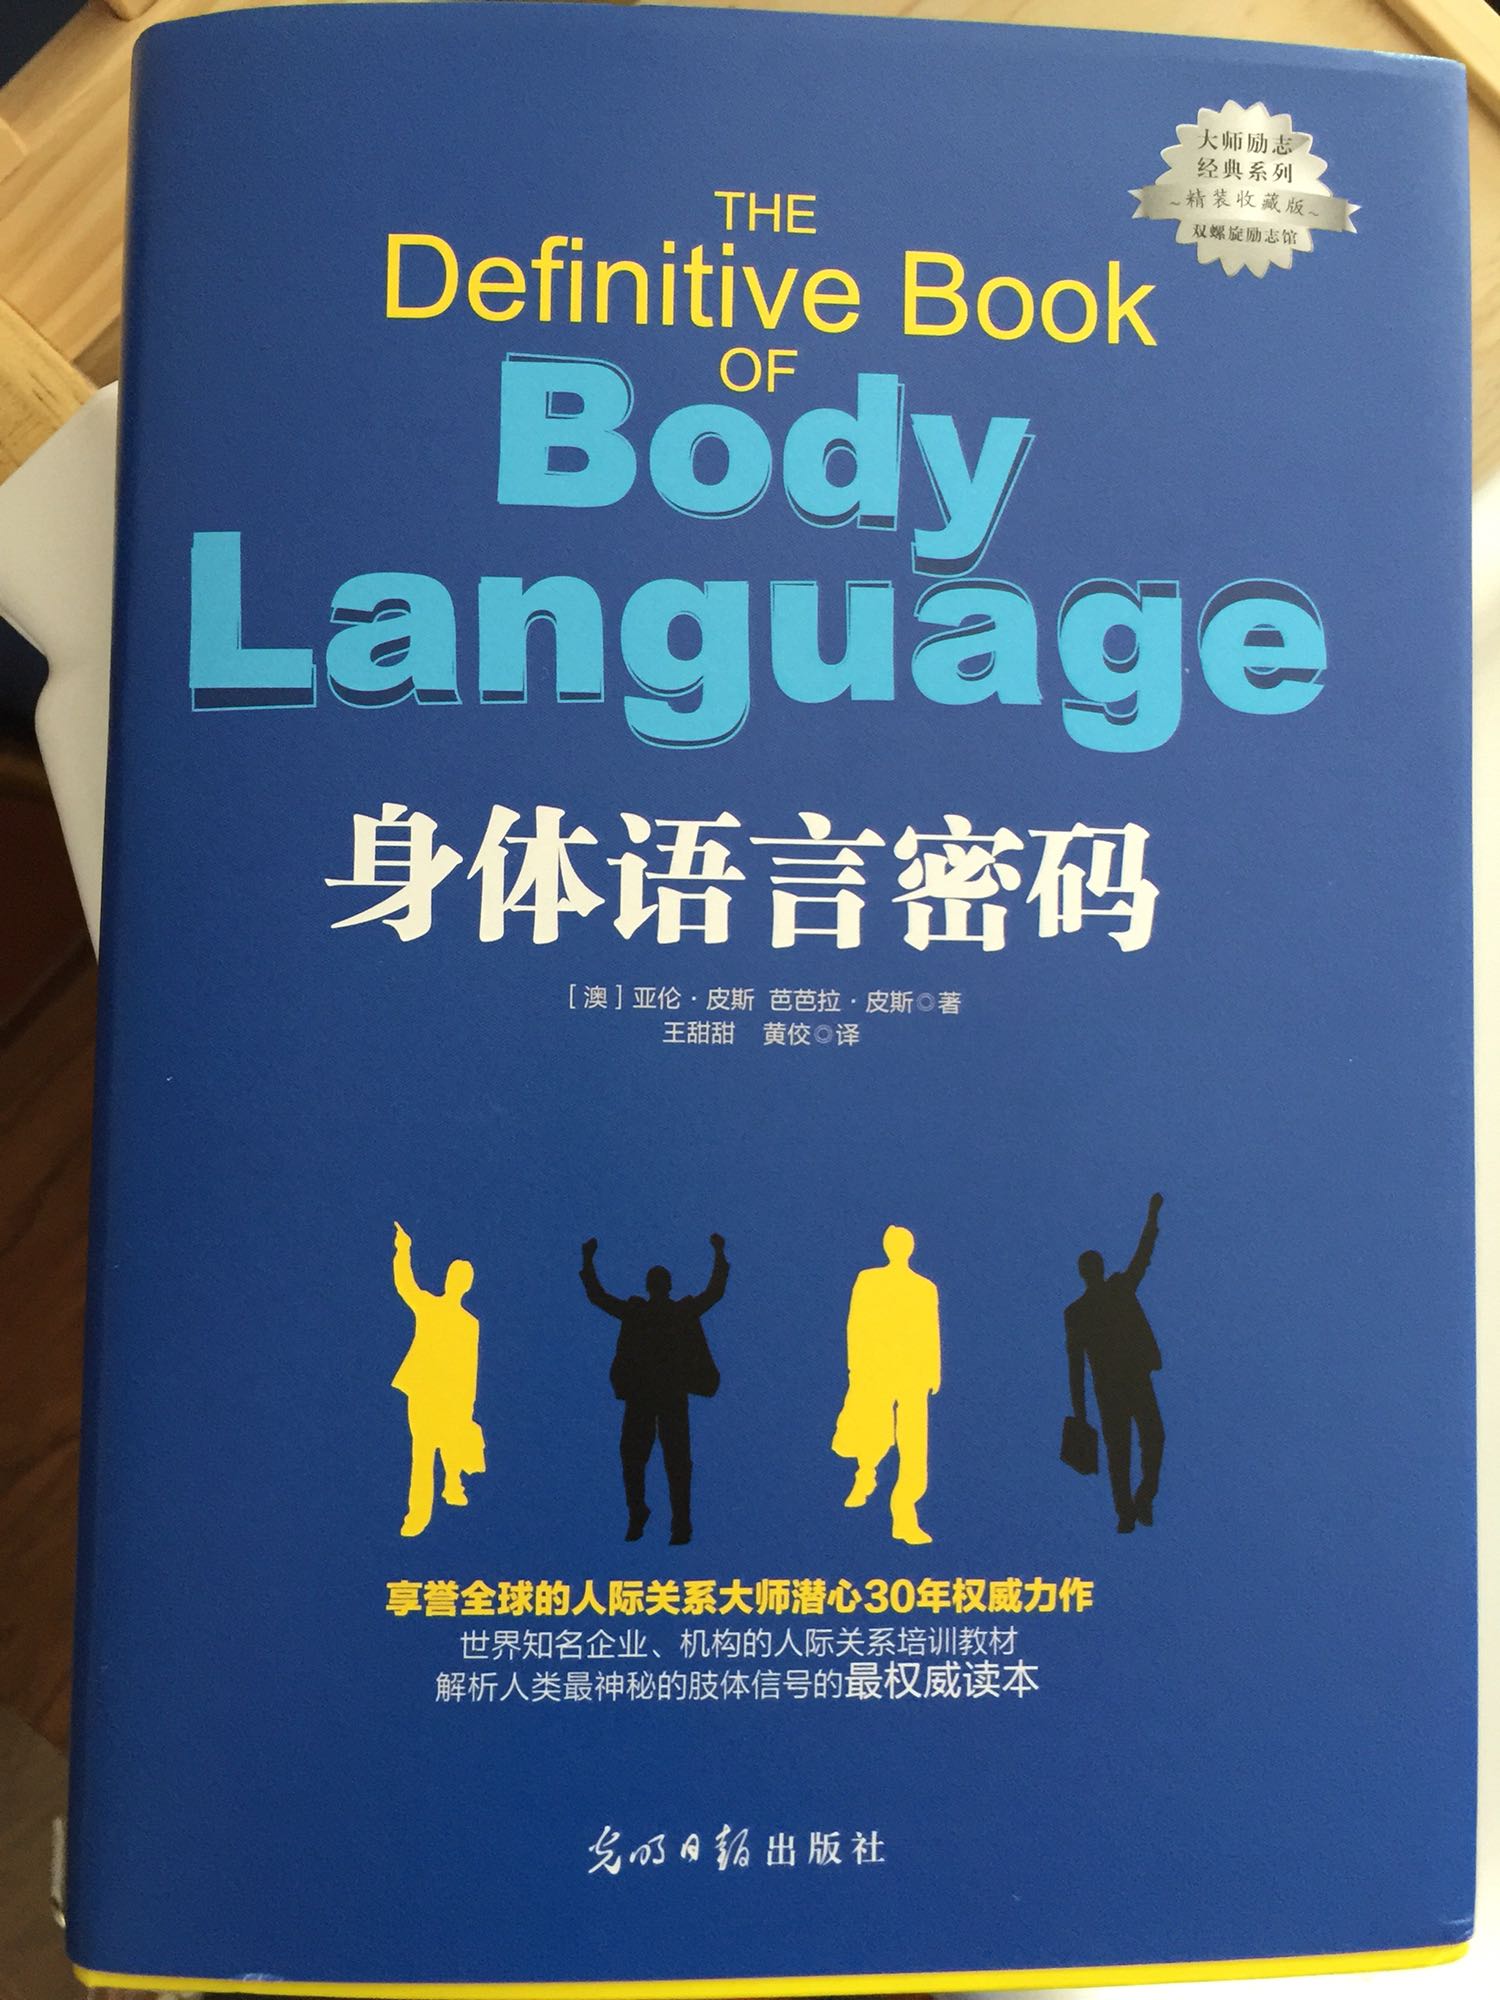 其实是挺好玩的一本书，可以了解肢体语言。